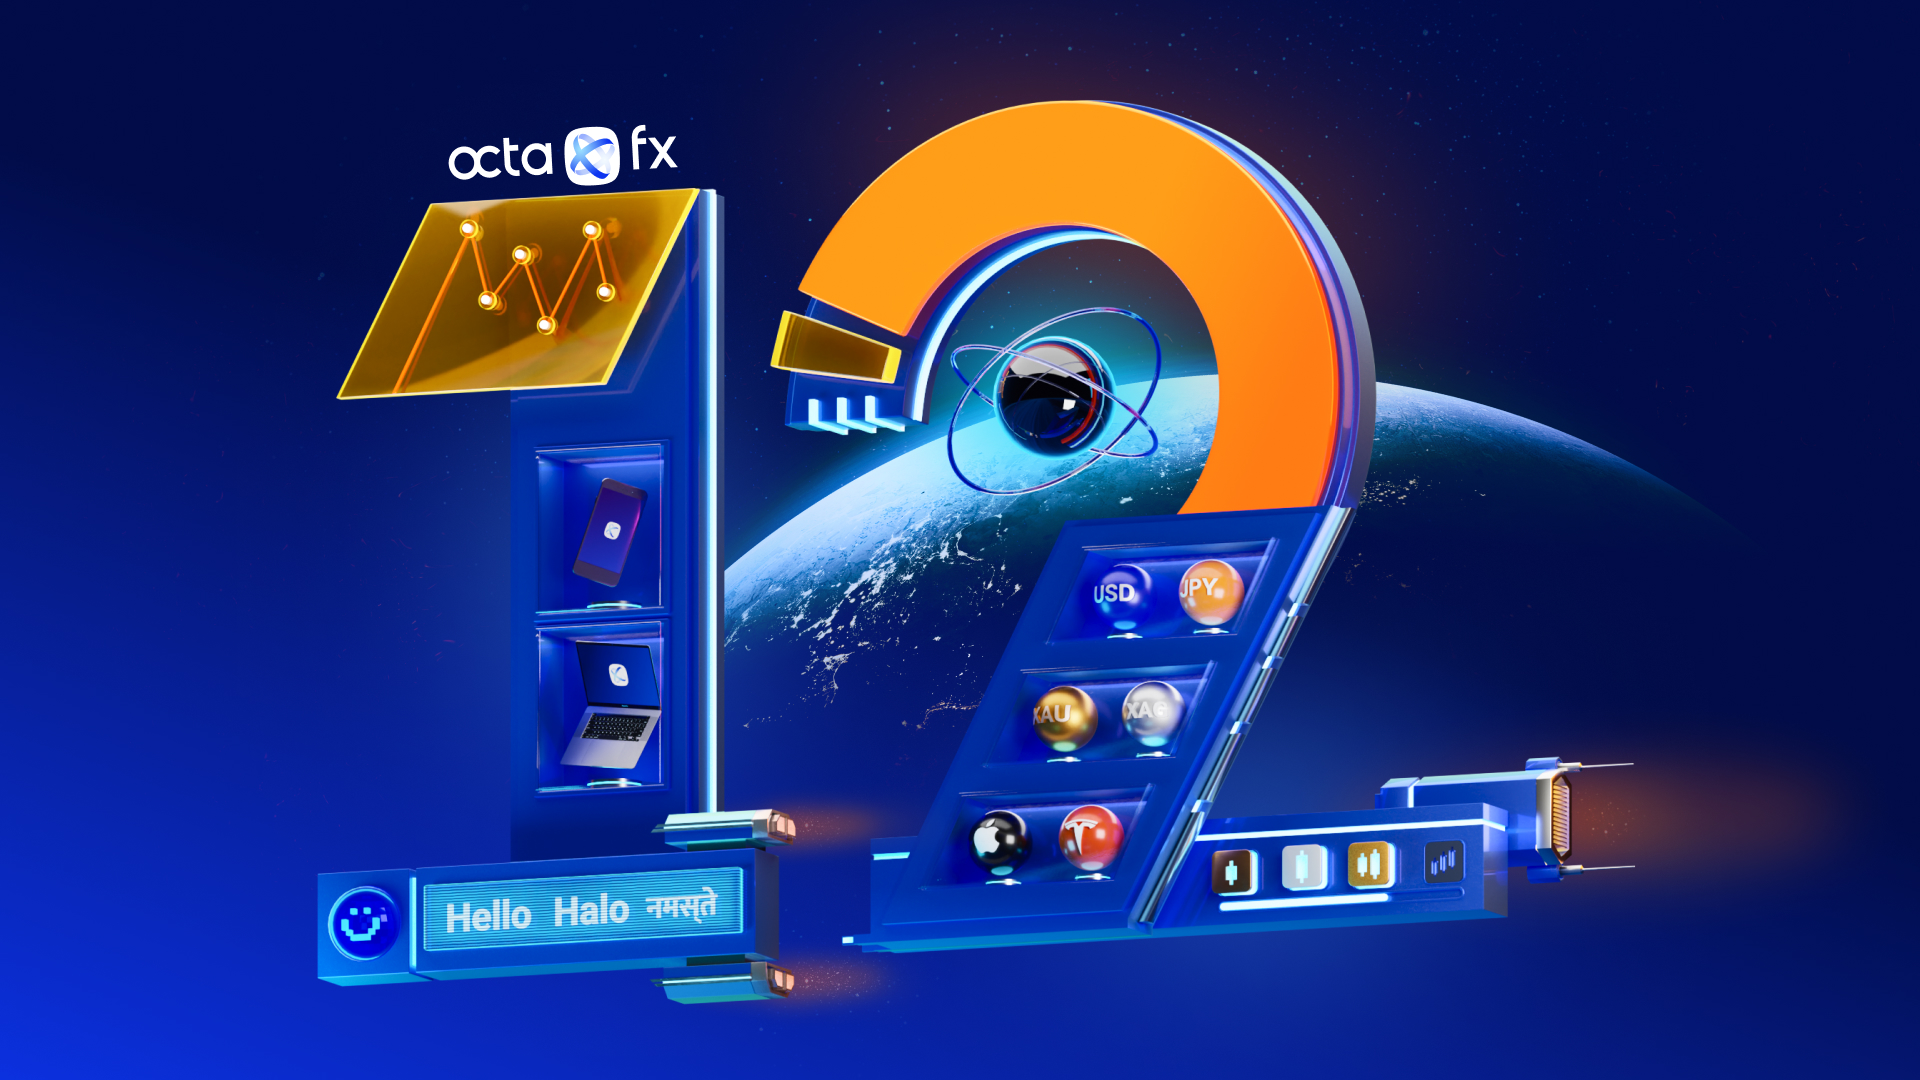 Sau 12 năm hoạt động, OctaFX có 42 triệu tài khoản khách hàng ở 120 thị trường trên thế giới